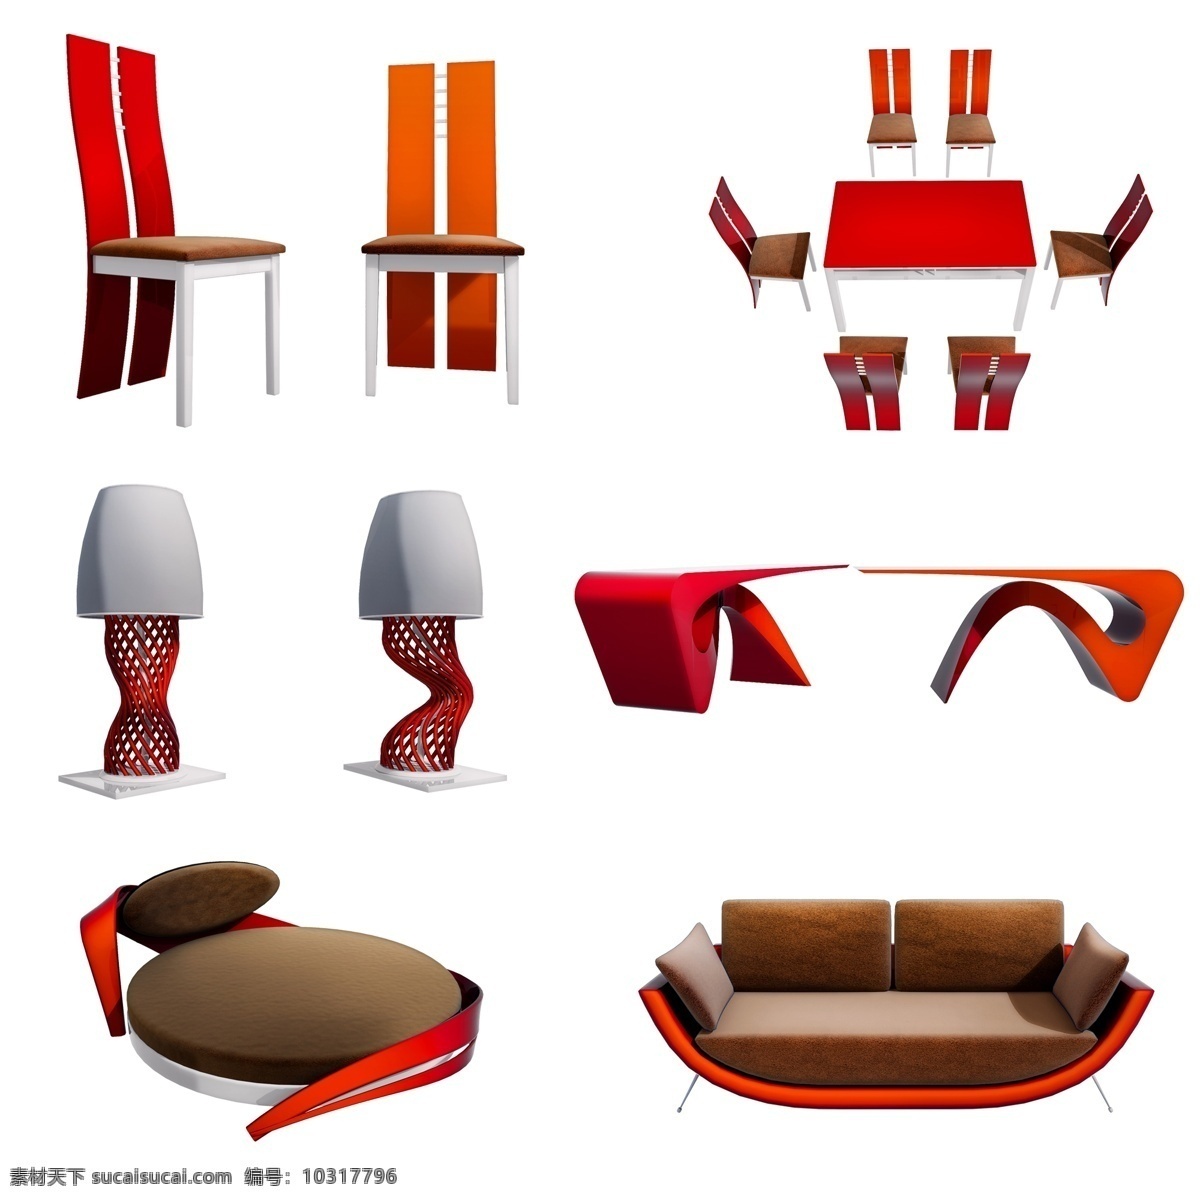 立体 现代 风格 家具 套 图 家居 椅子 餐桌 沙发 大床 质感 仿真 现代风格 创意 套图 png图